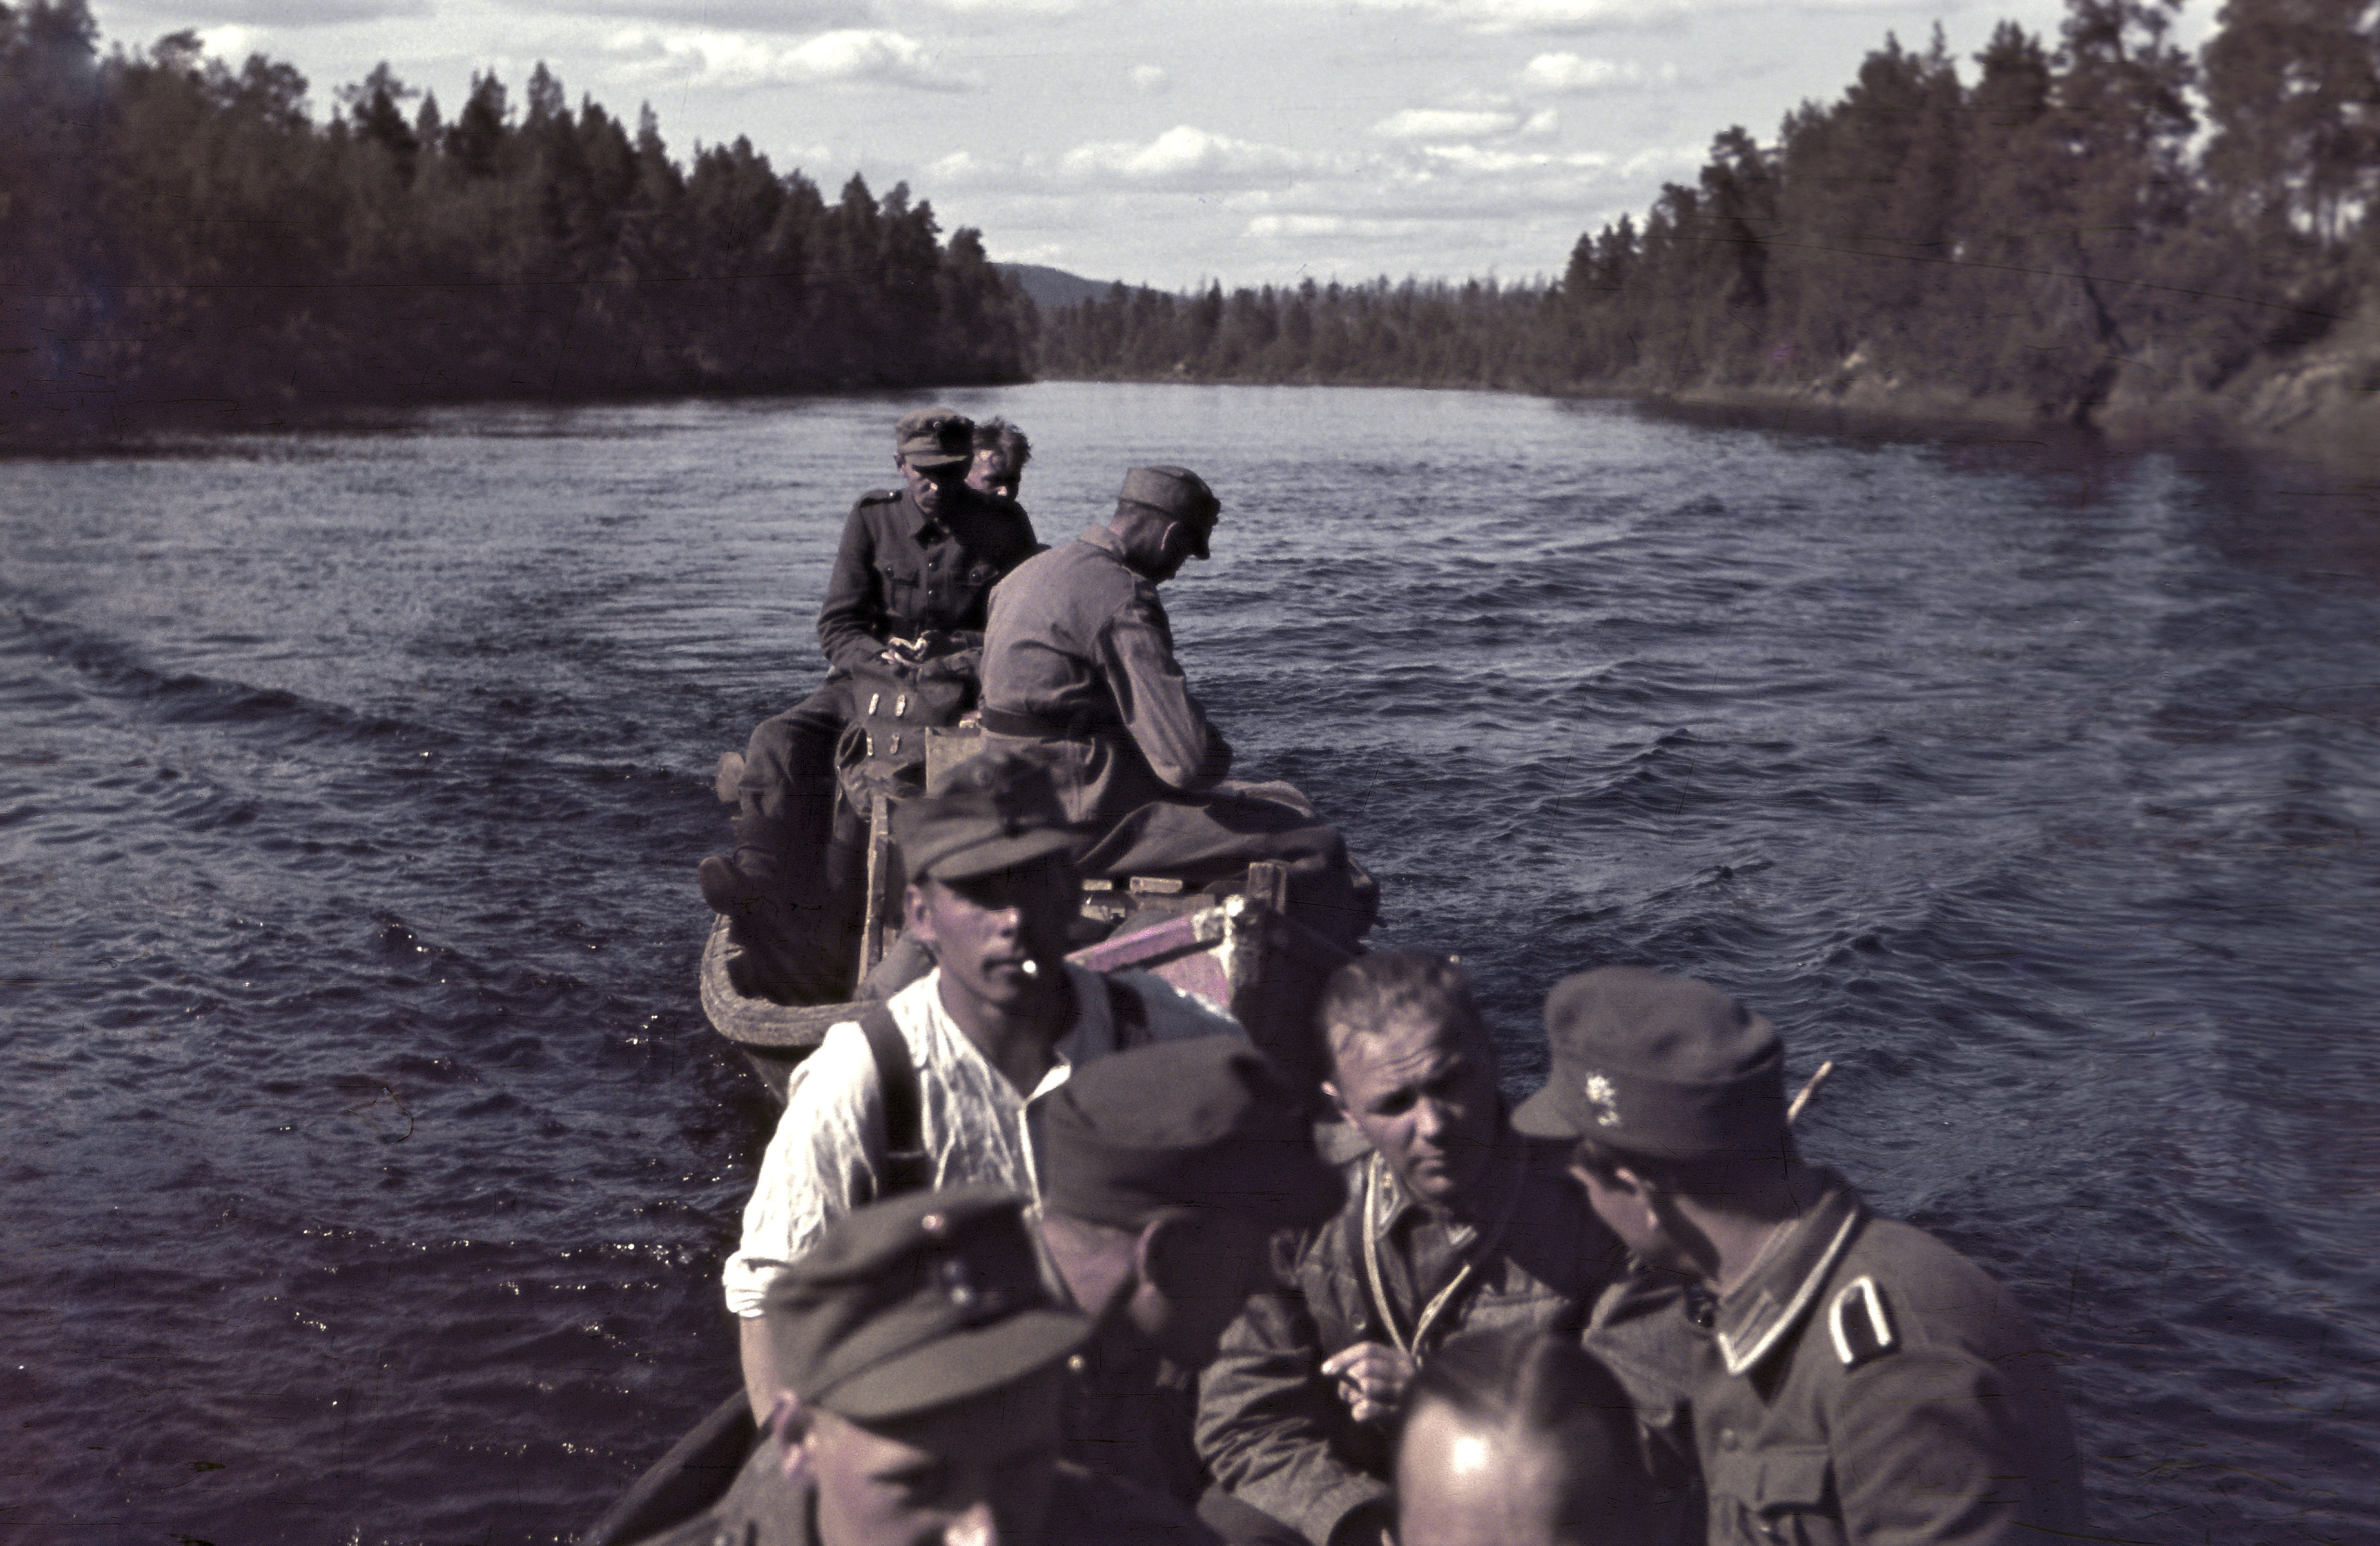 фото финляндия в войнах